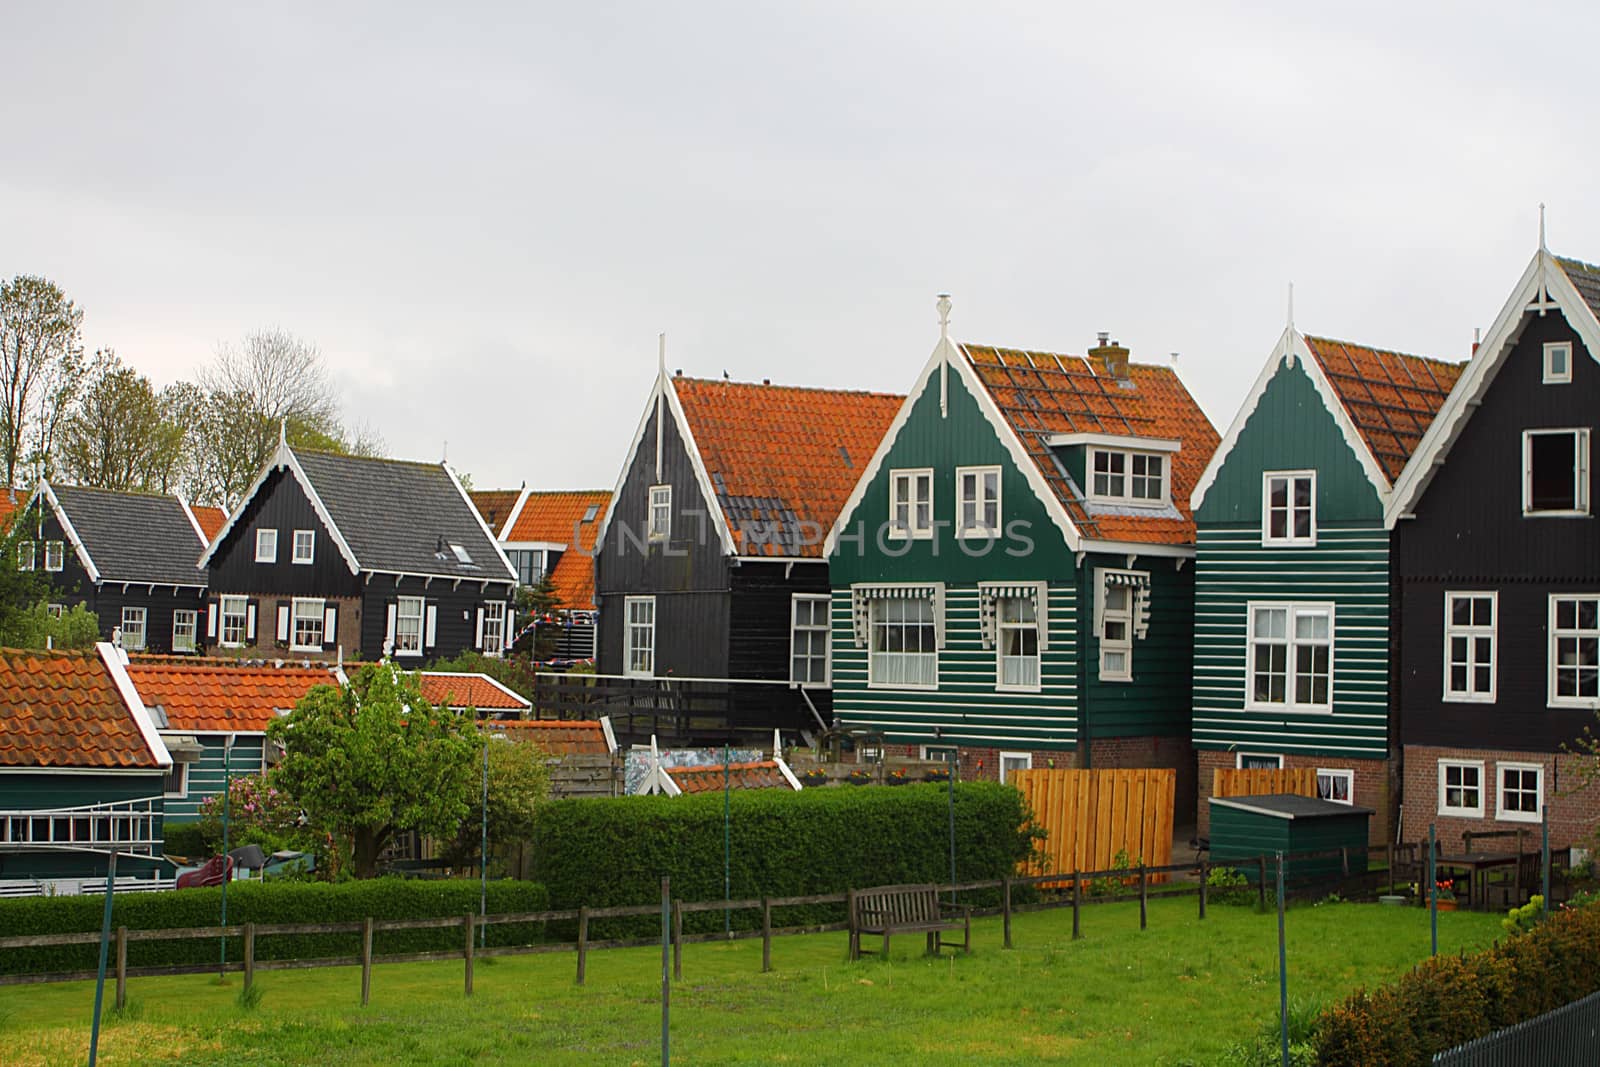 Marken,North Holland, Netherlands